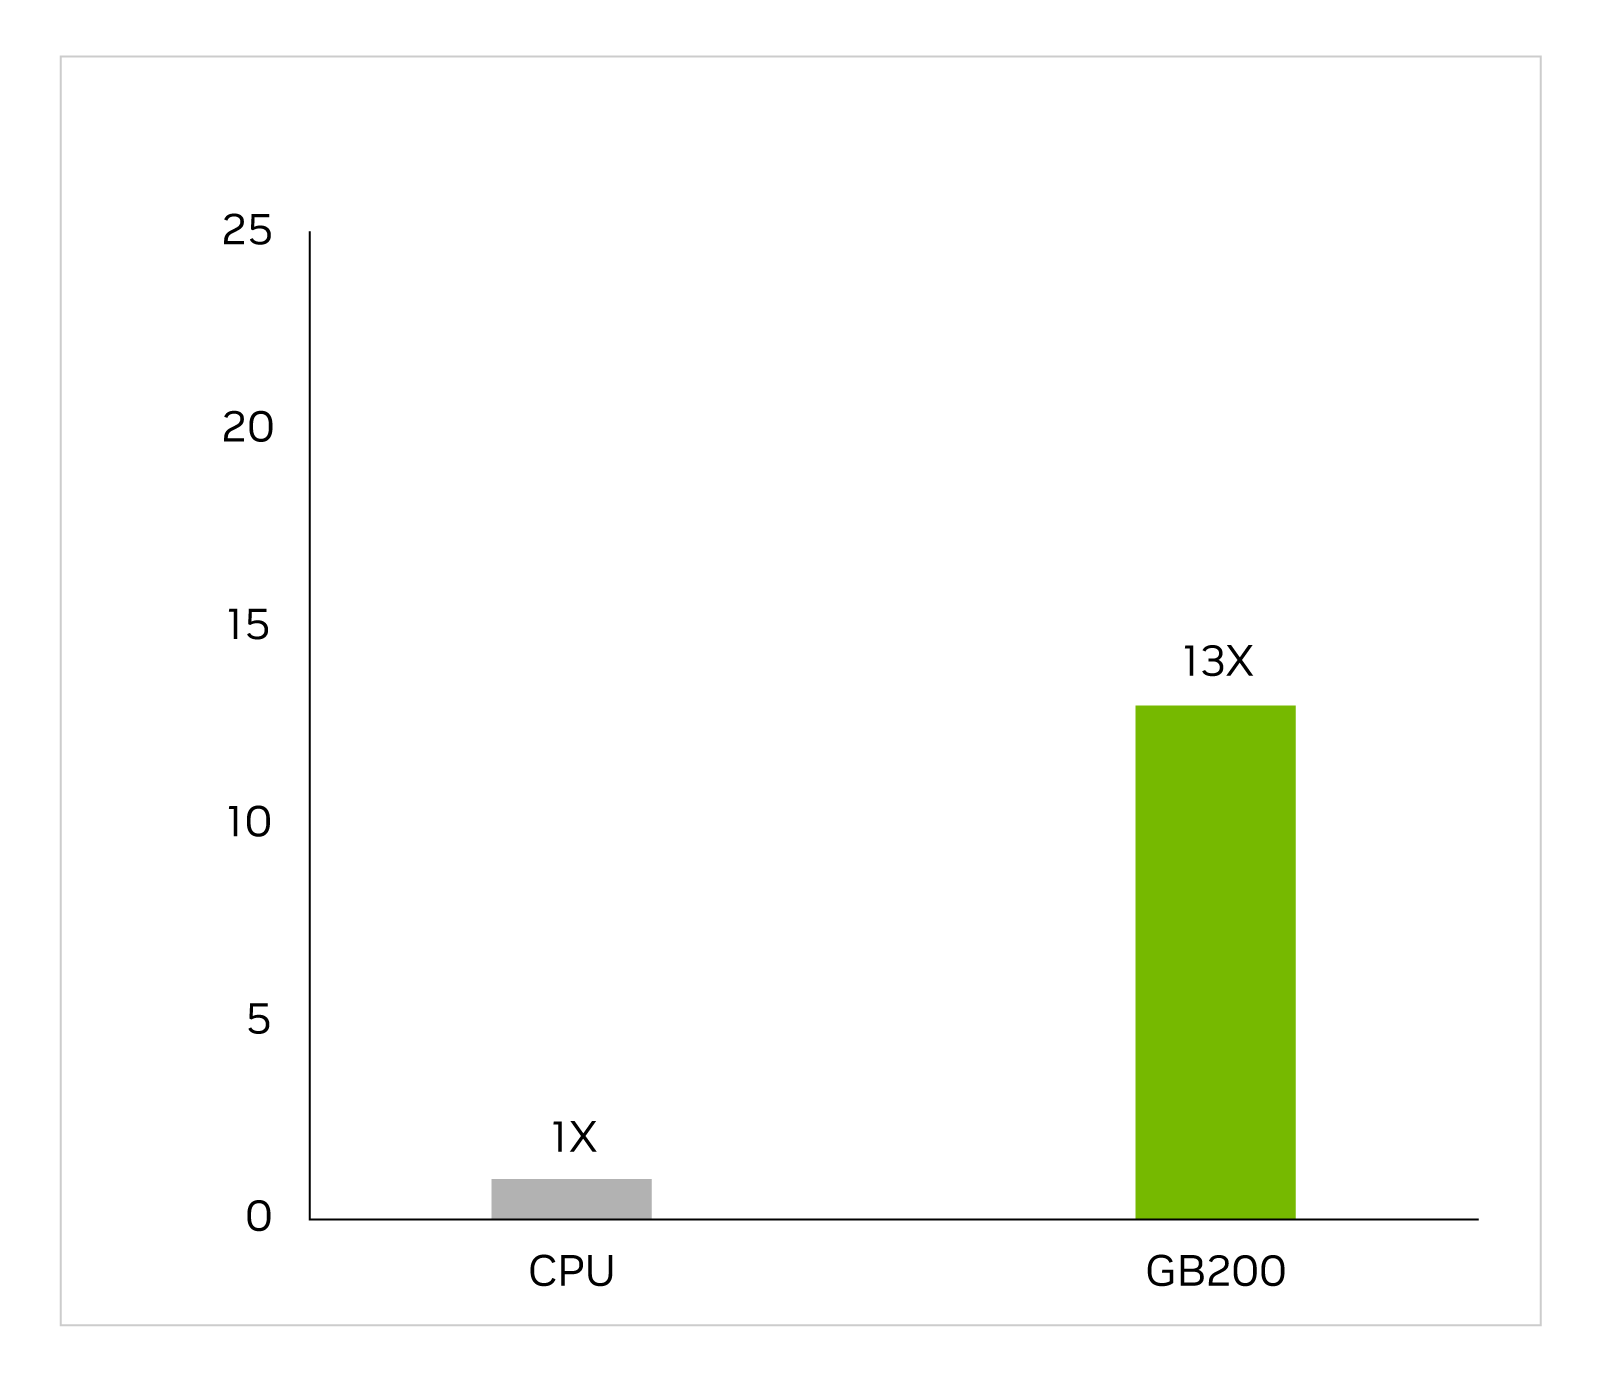 CPU'yu 1x değeriyle ve GB200'ü 13x değeriyle gösteren bir çubuk grafik.